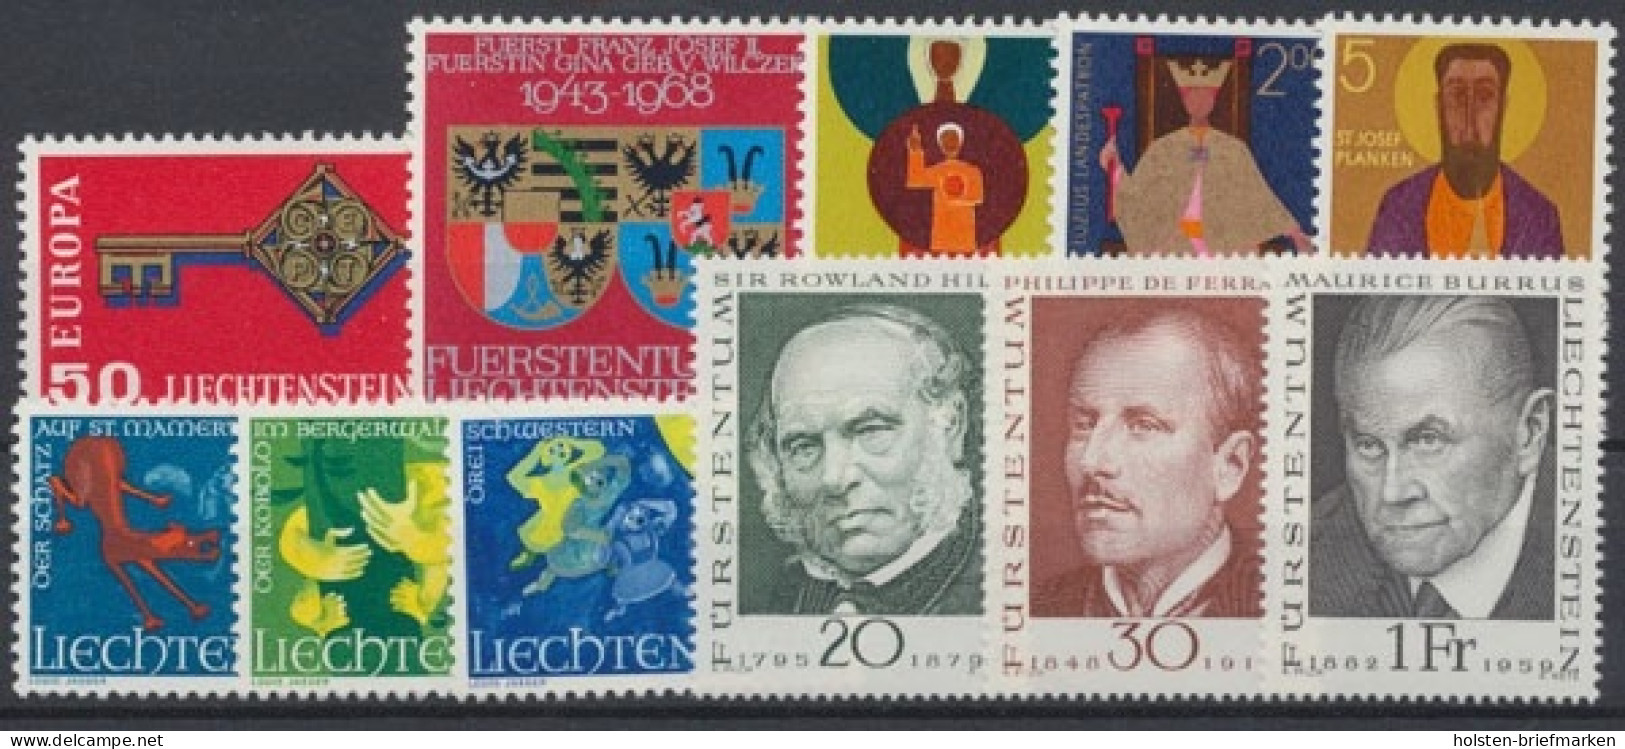 Liechtenstein, MiNr. 495-505, Jahrgang 1968, Postfrisch - Années Complètes